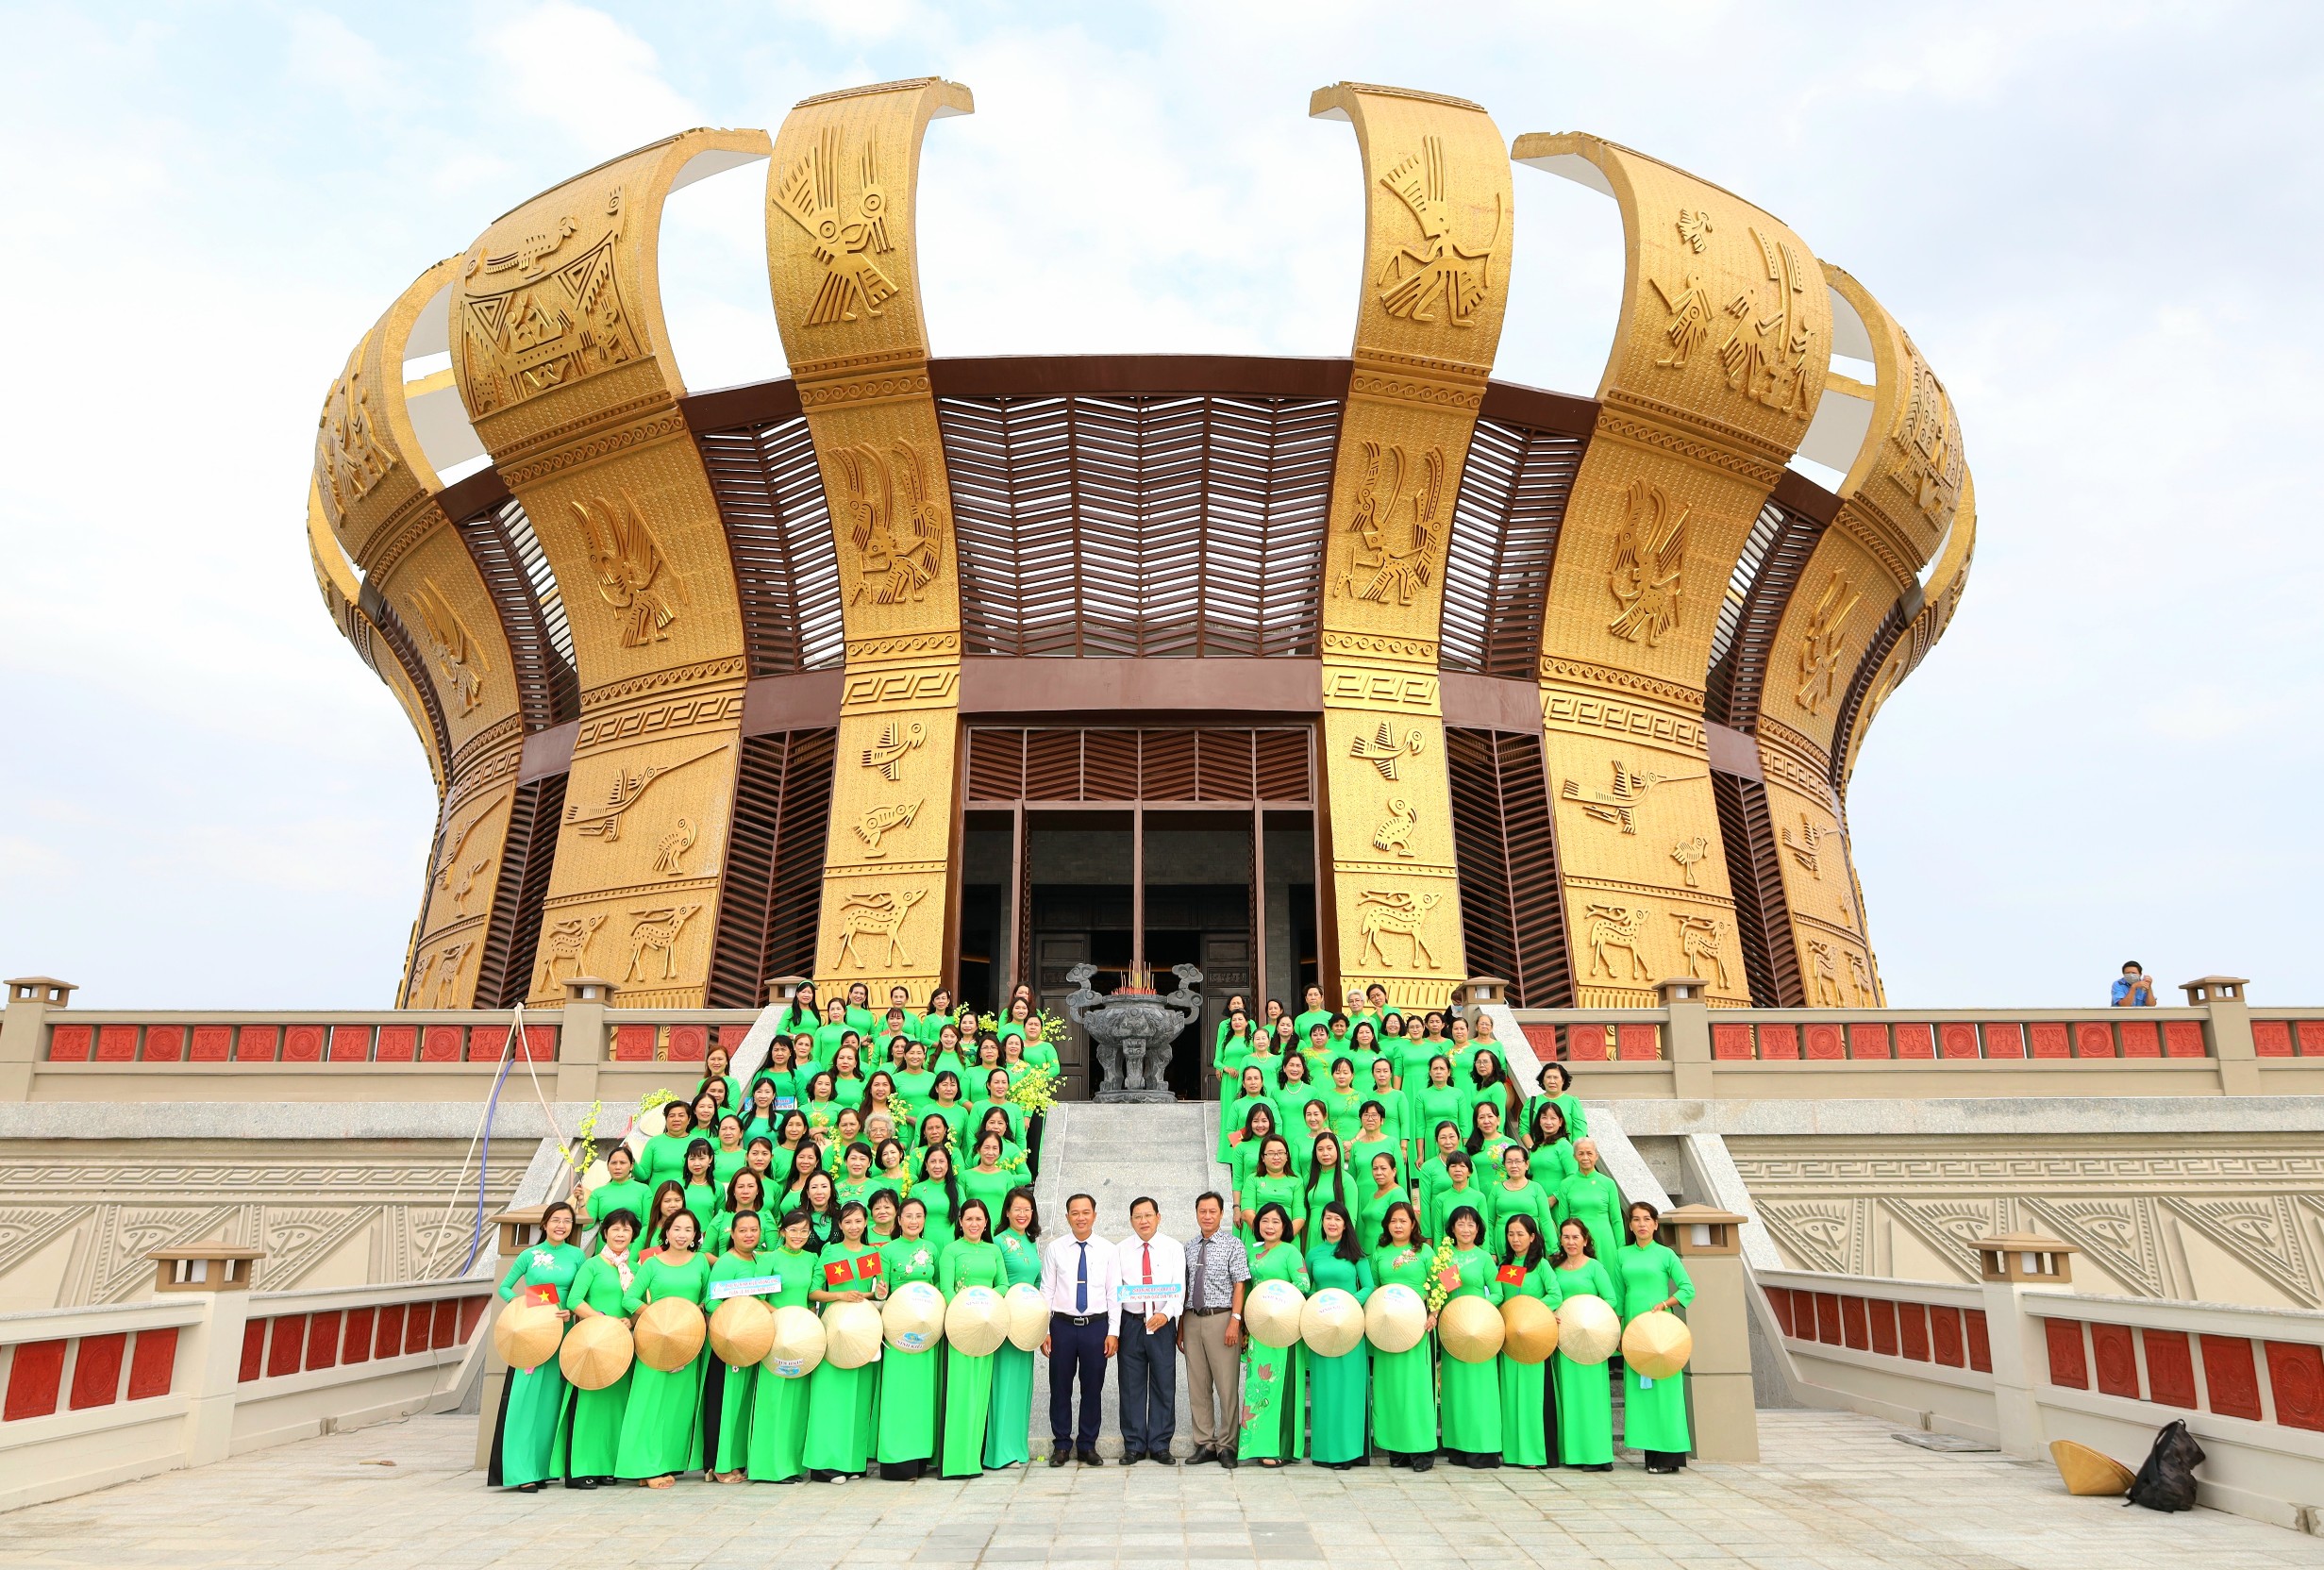 Lãnh đạo quận Ninh Kiều chụp hình lưu niệm cùng Hội Liên hiệp Phụ nữ (LHPN) quận Ninh Kiều tại Đền thờ các vua Hùng (quận Bình Thủy).